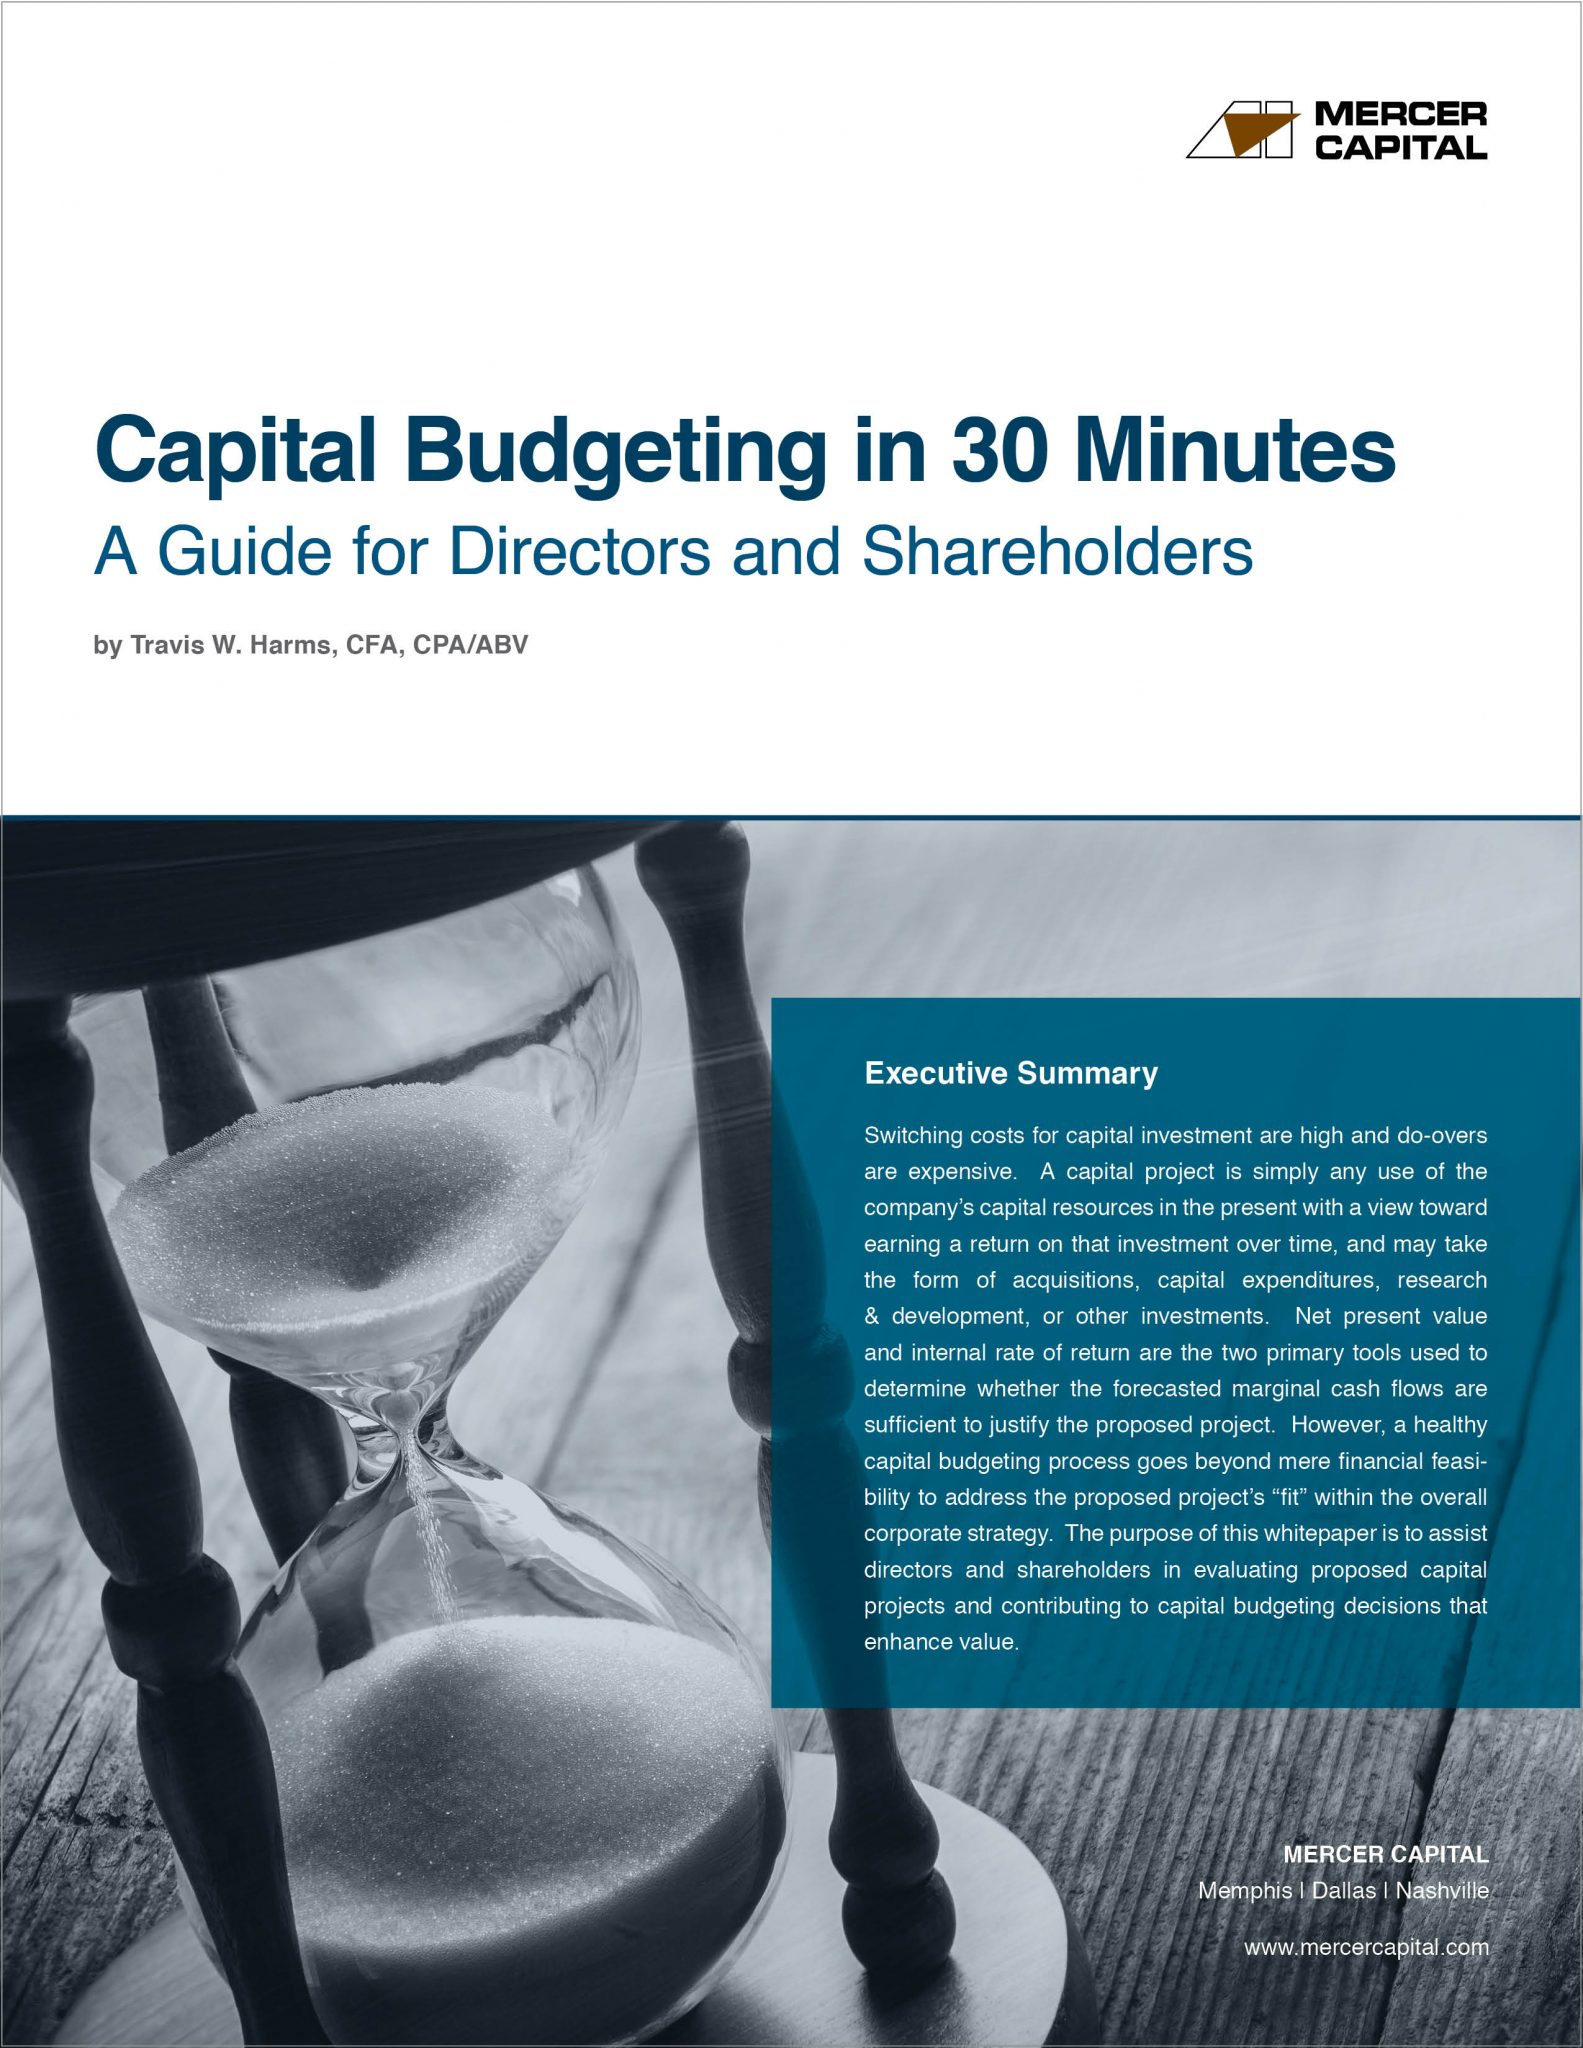 cov_mercer-capital_capital-budgeting-in-30-mins-2016